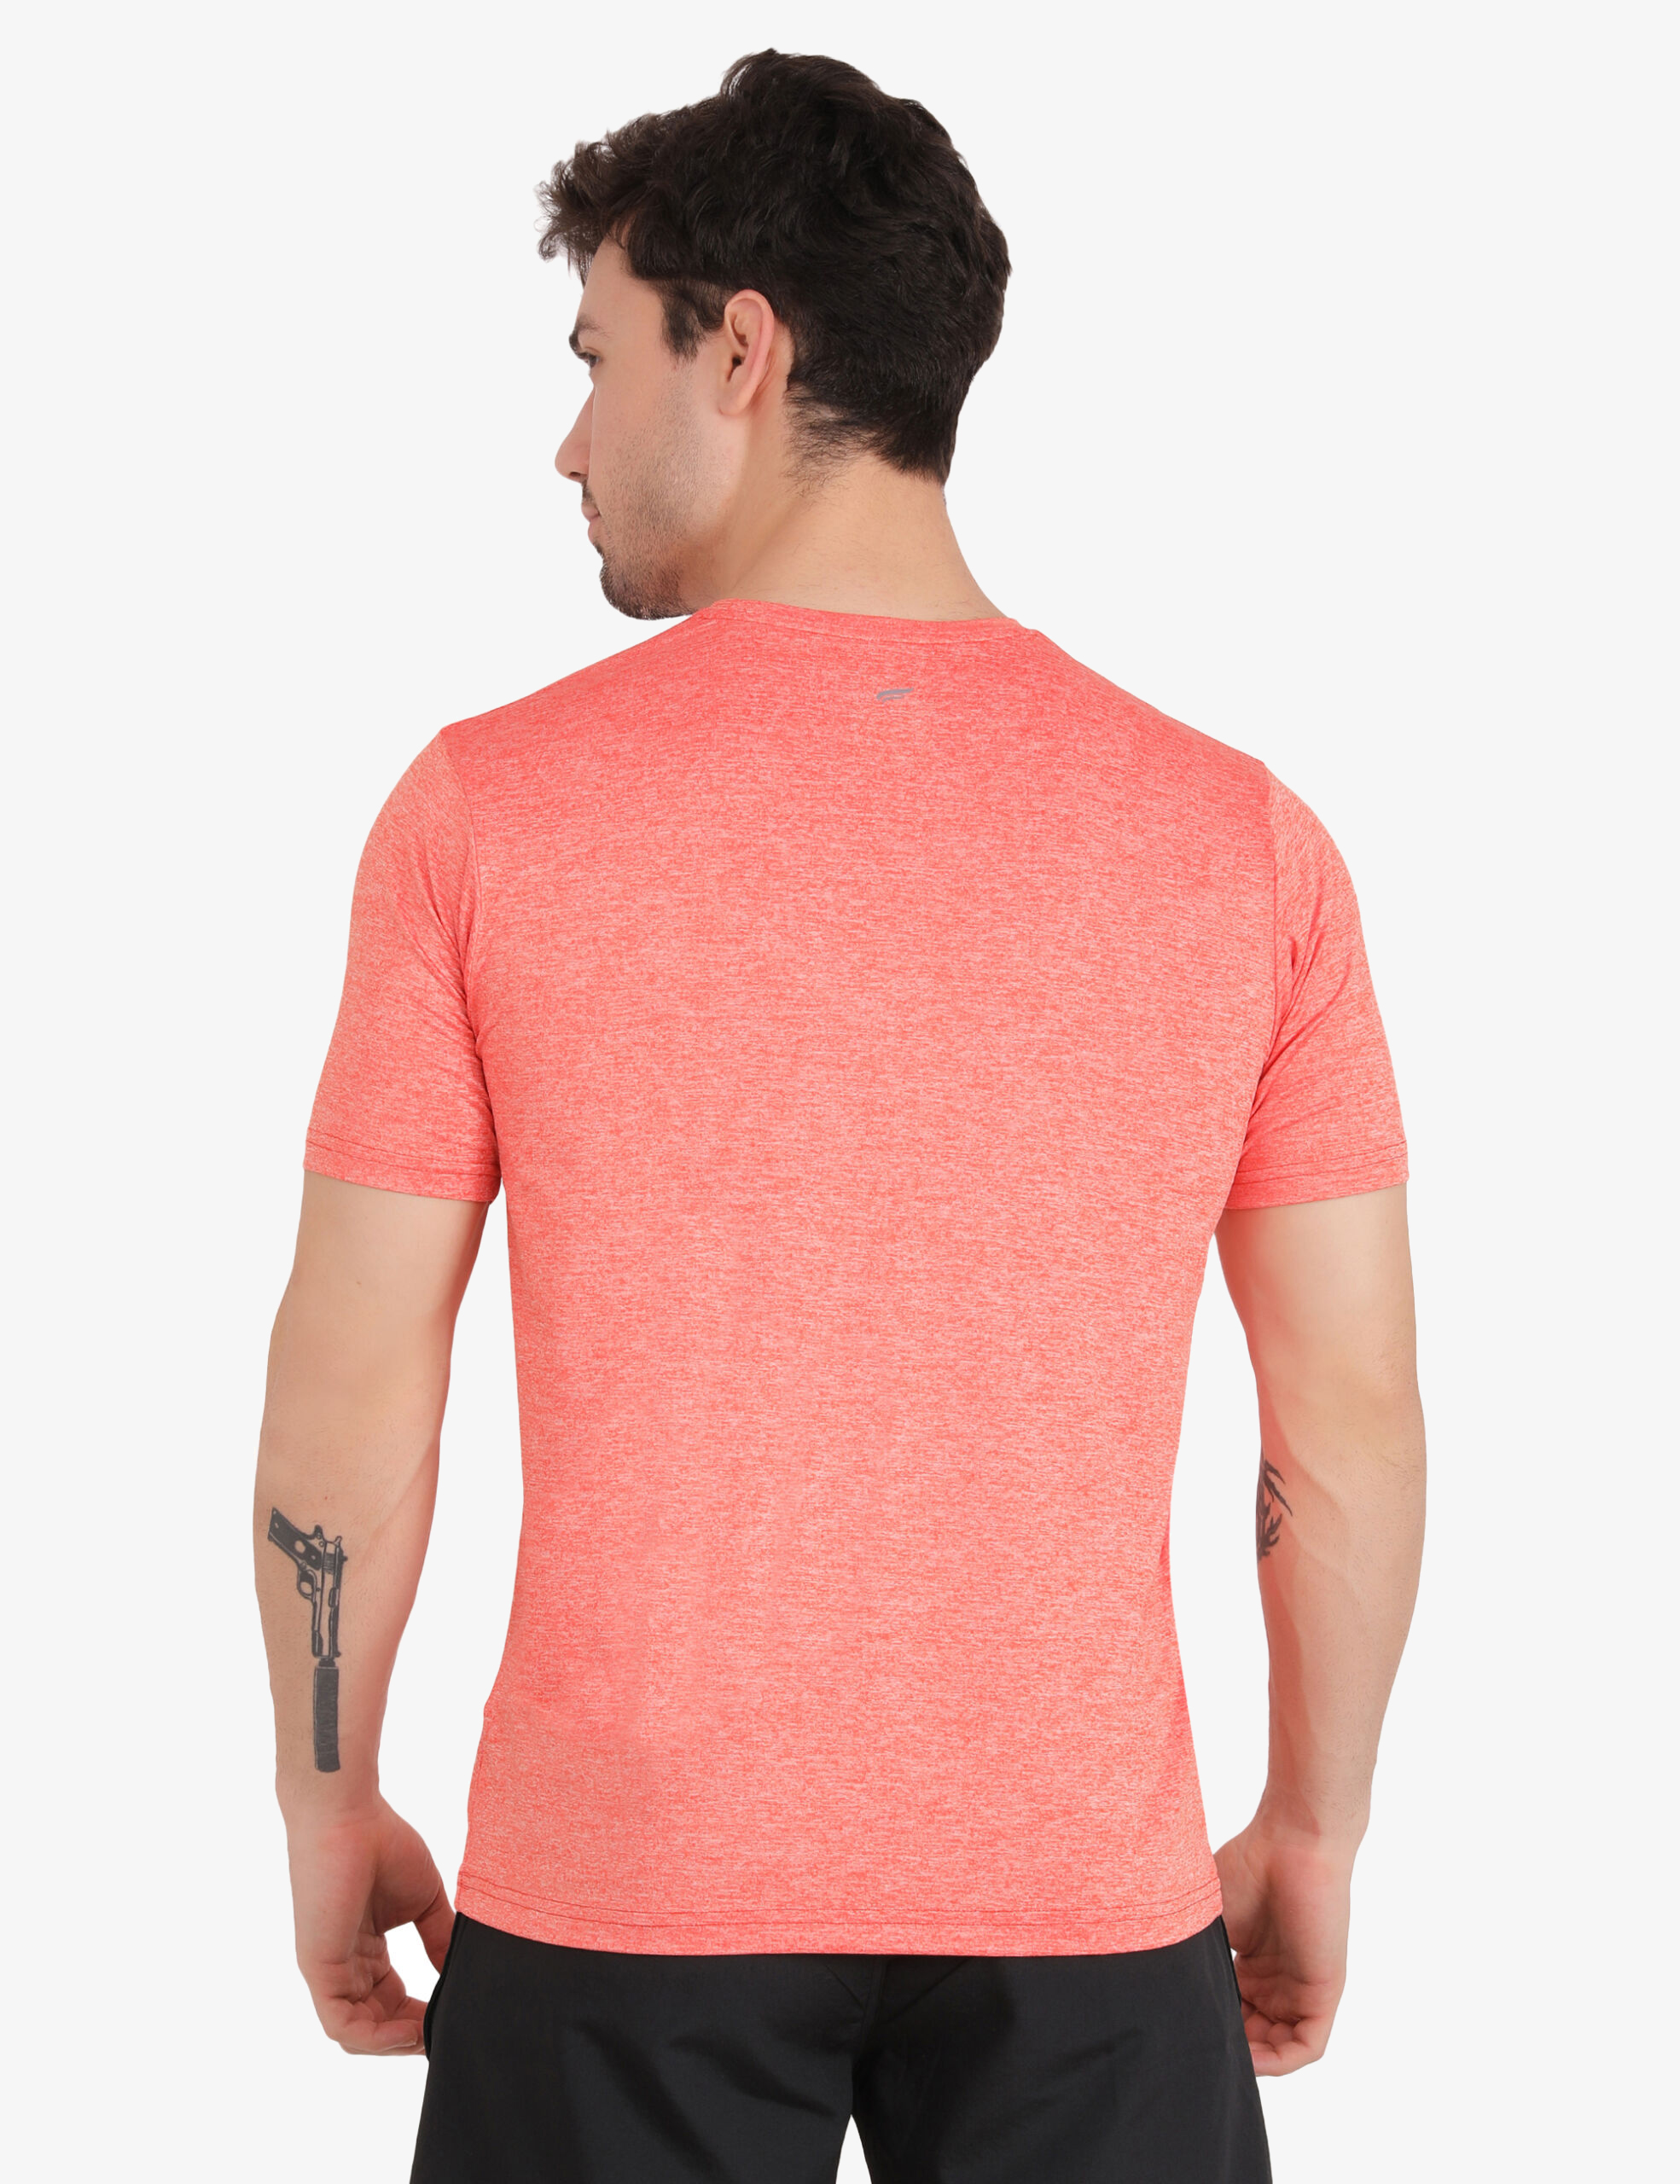 ASI All Rounder Orange T-shirt for Men